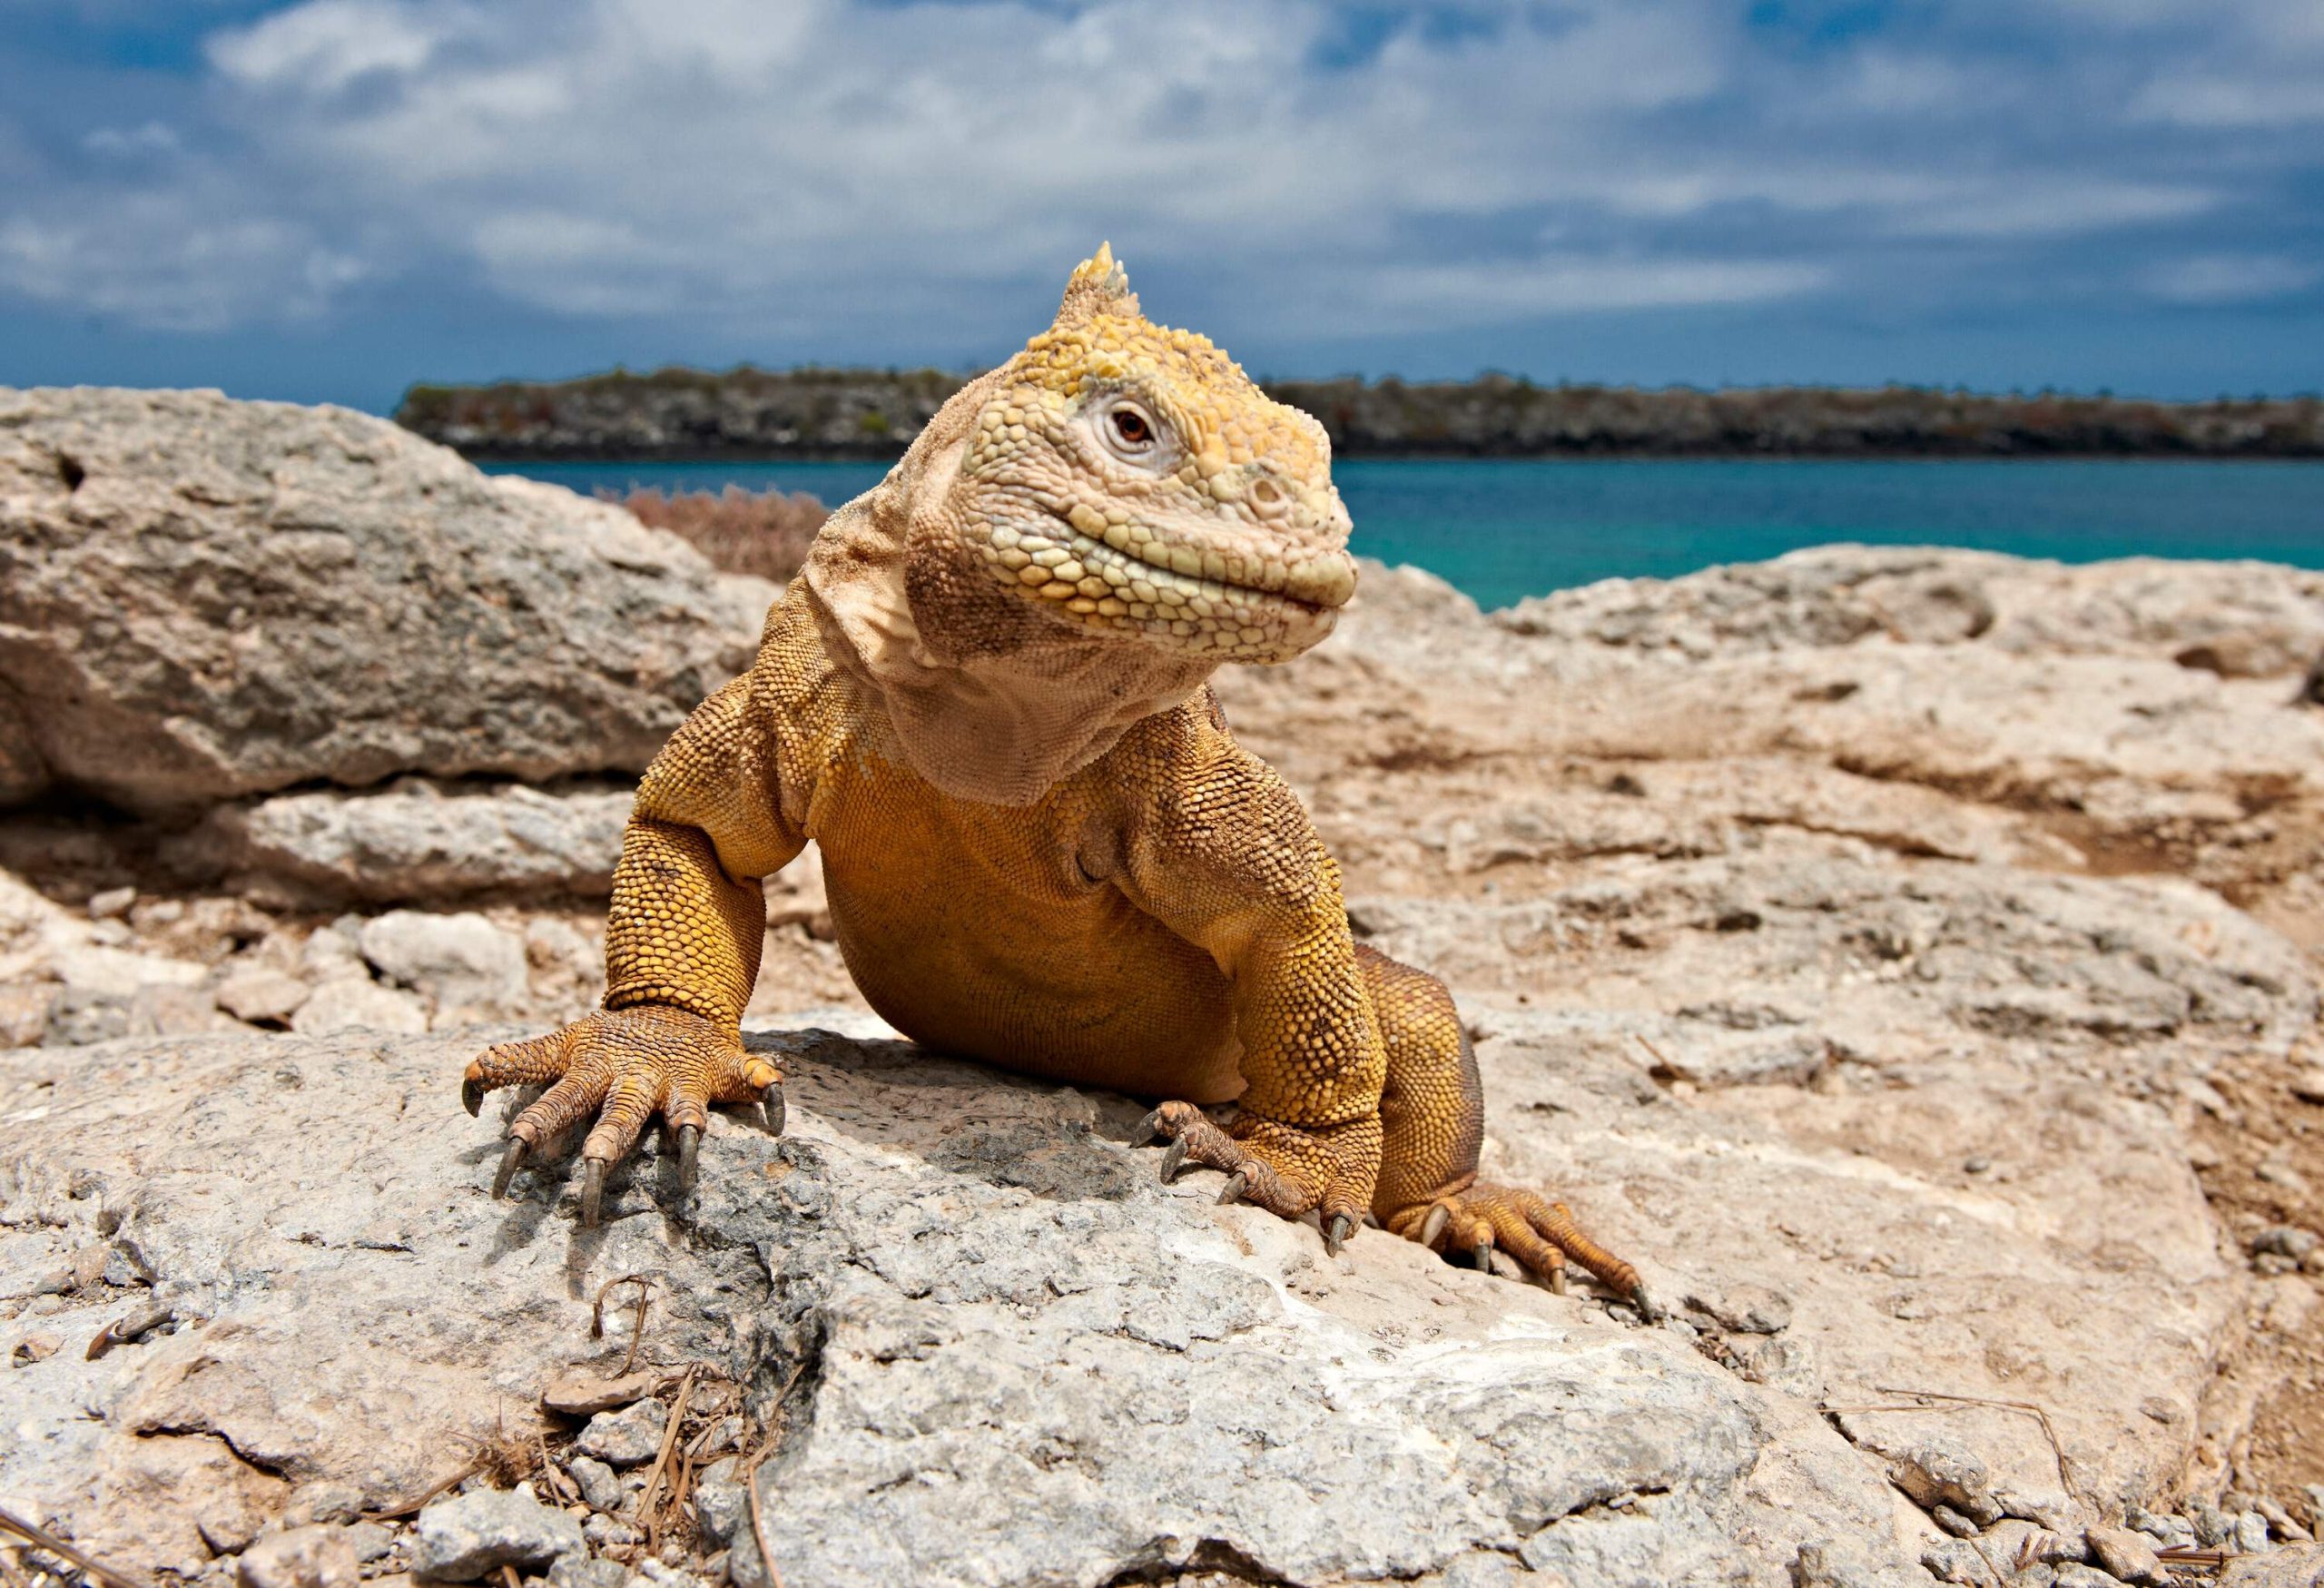 A bright green and scaly iguana crawls on coastal rocks.